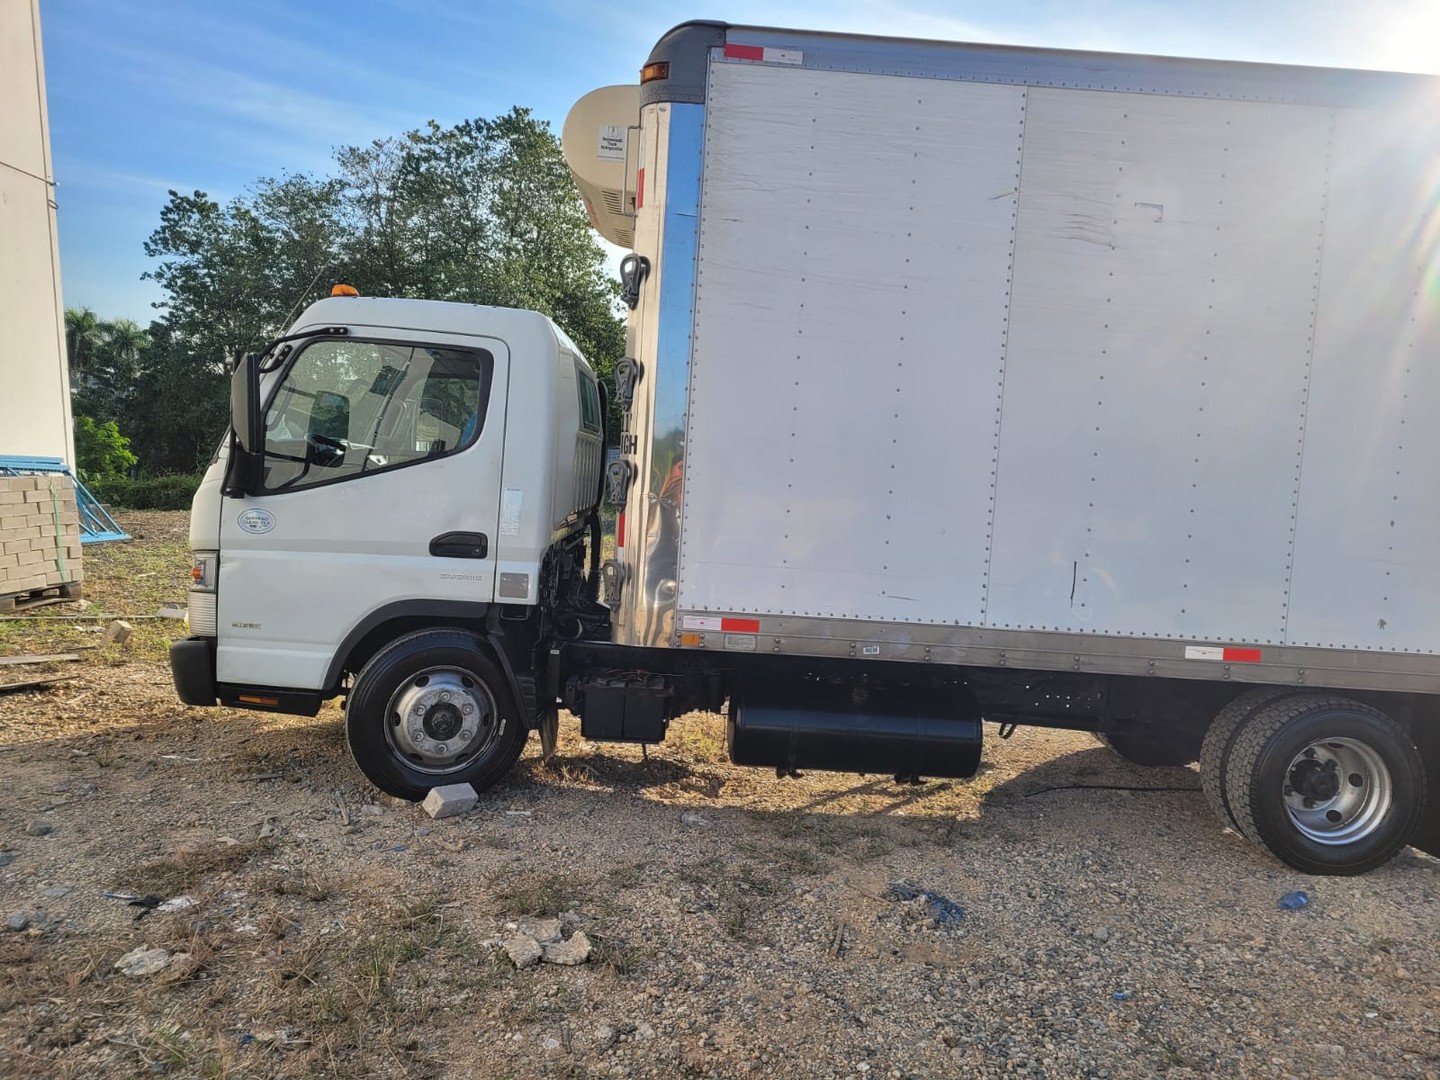 camiones y vehiculos pesados - Vendo traspaso de camion mitsubishi año 2014. $750,000 negociable. 5